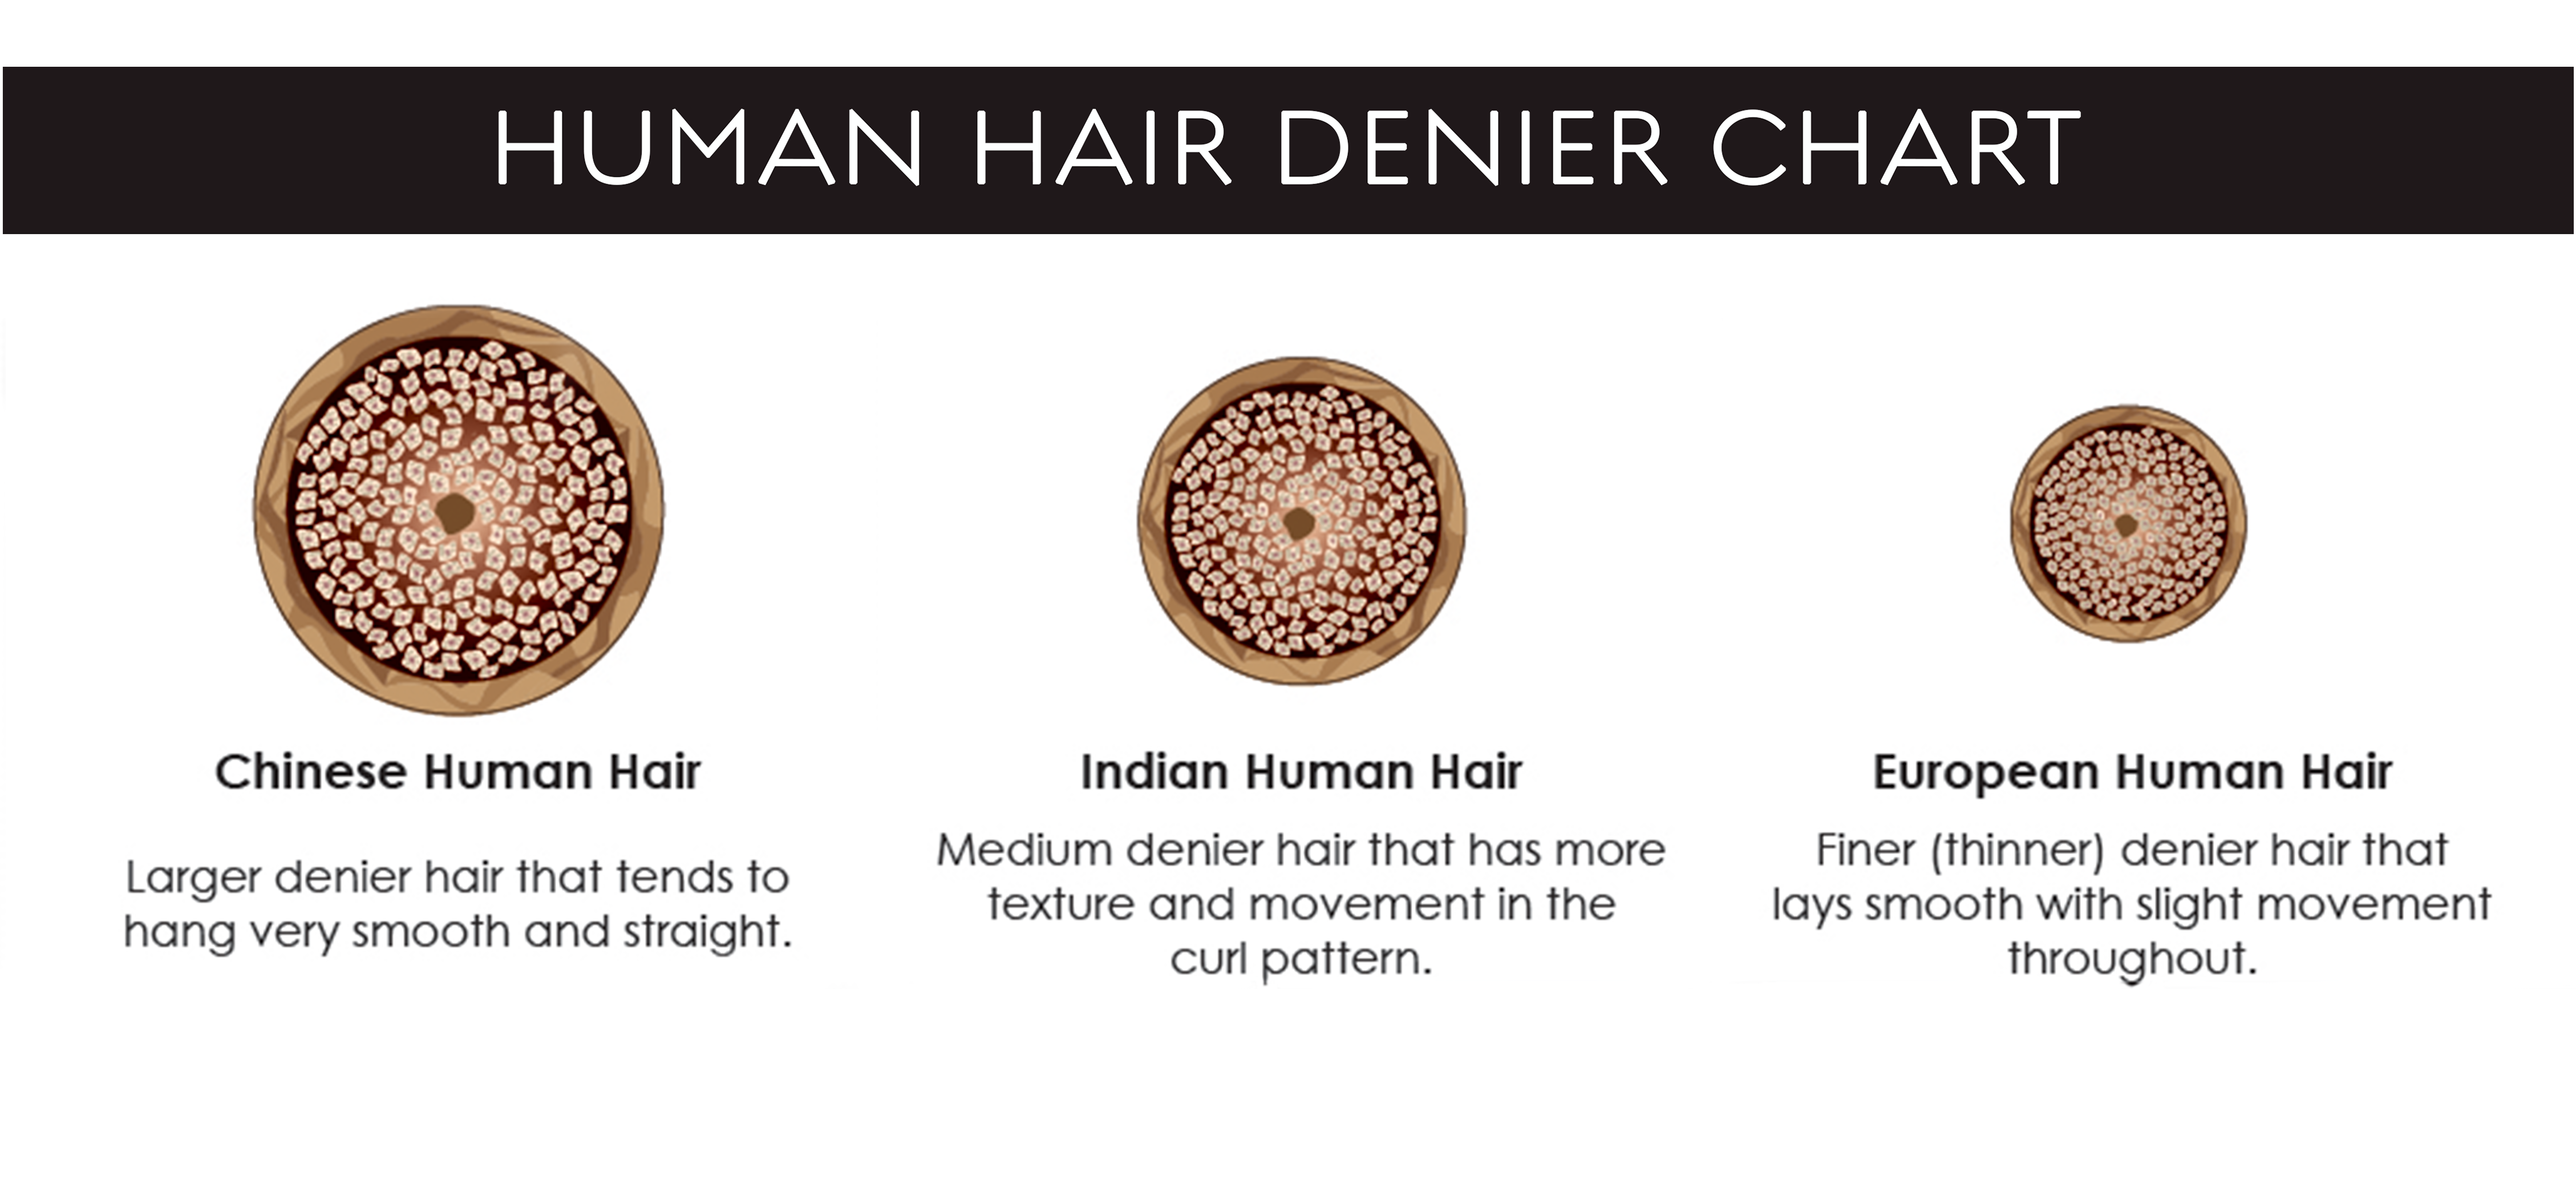 Human Hair Denier Chart